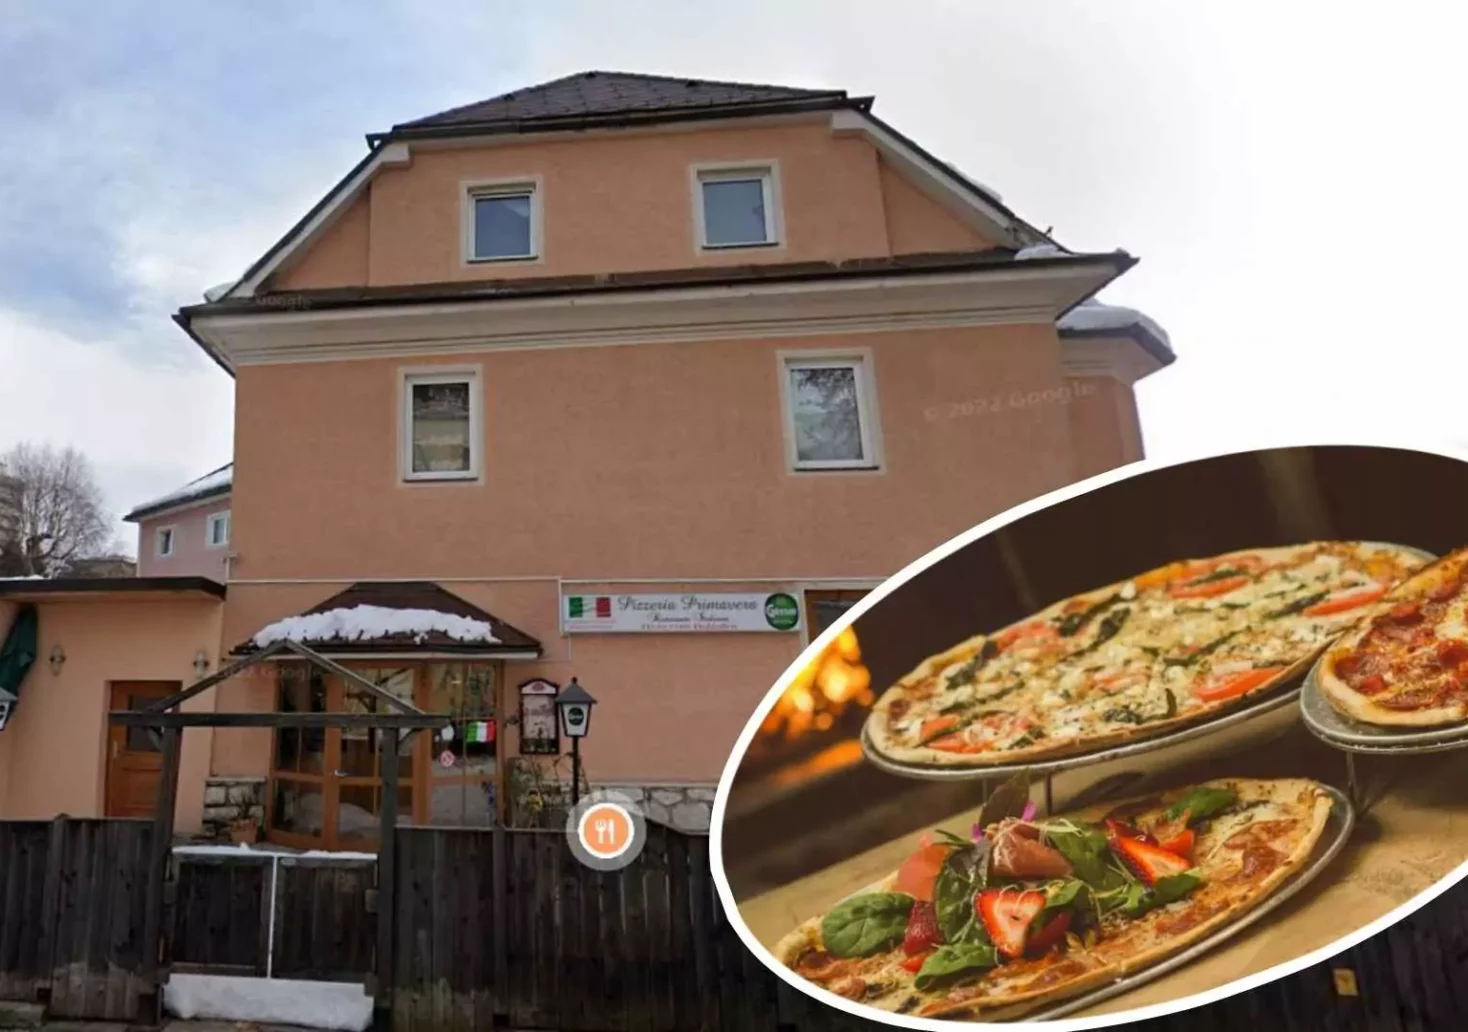 Foto in Beitrag von 5min.at: Zu sehen ist die Pizzeria "Primavera" in Villach inklusive eines reinmontierten Fotos von mehreren Pizzen.